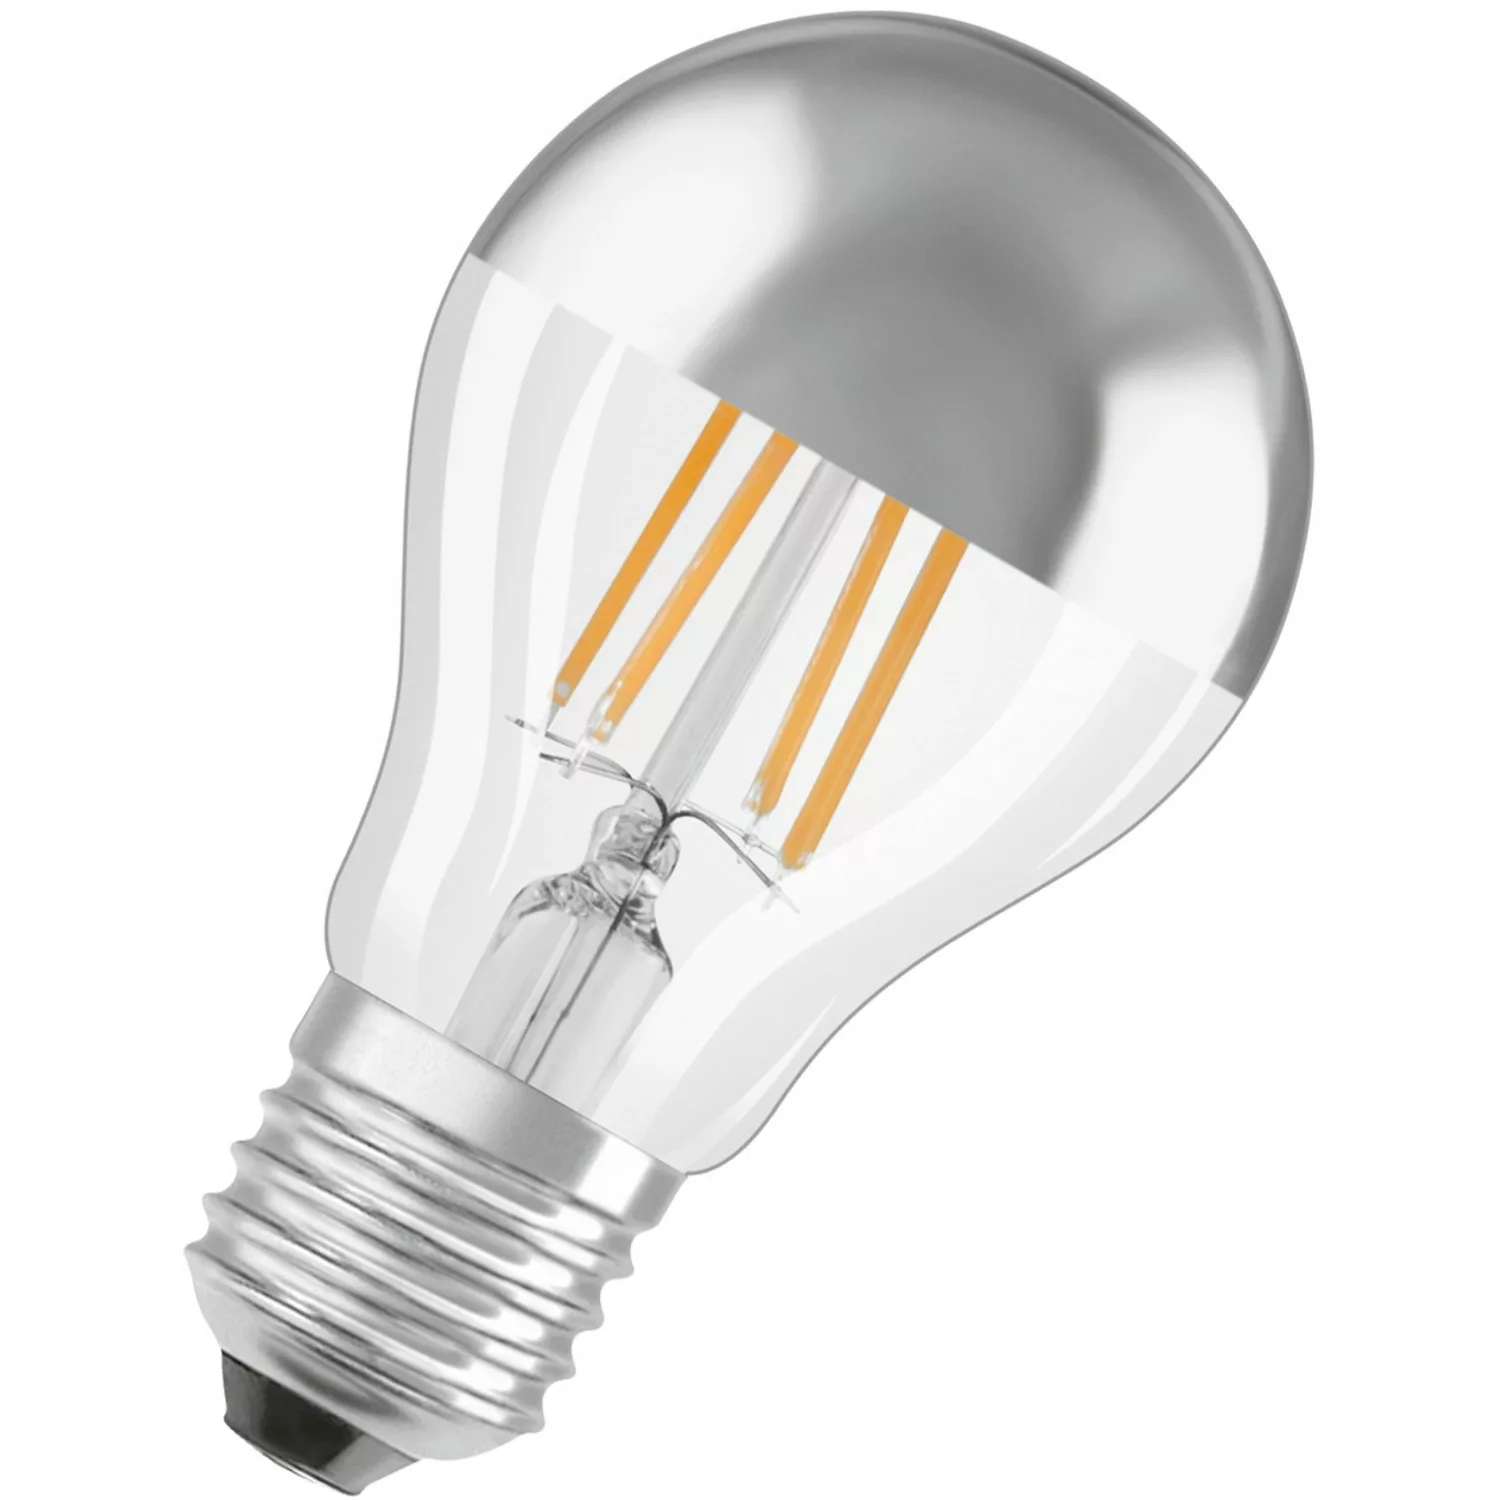 Osram LED-Leuchtmittel E27 Glühlampenform 4 W 400 lm 10,5 x 6 cm (H x Ø) günstig online kaufen